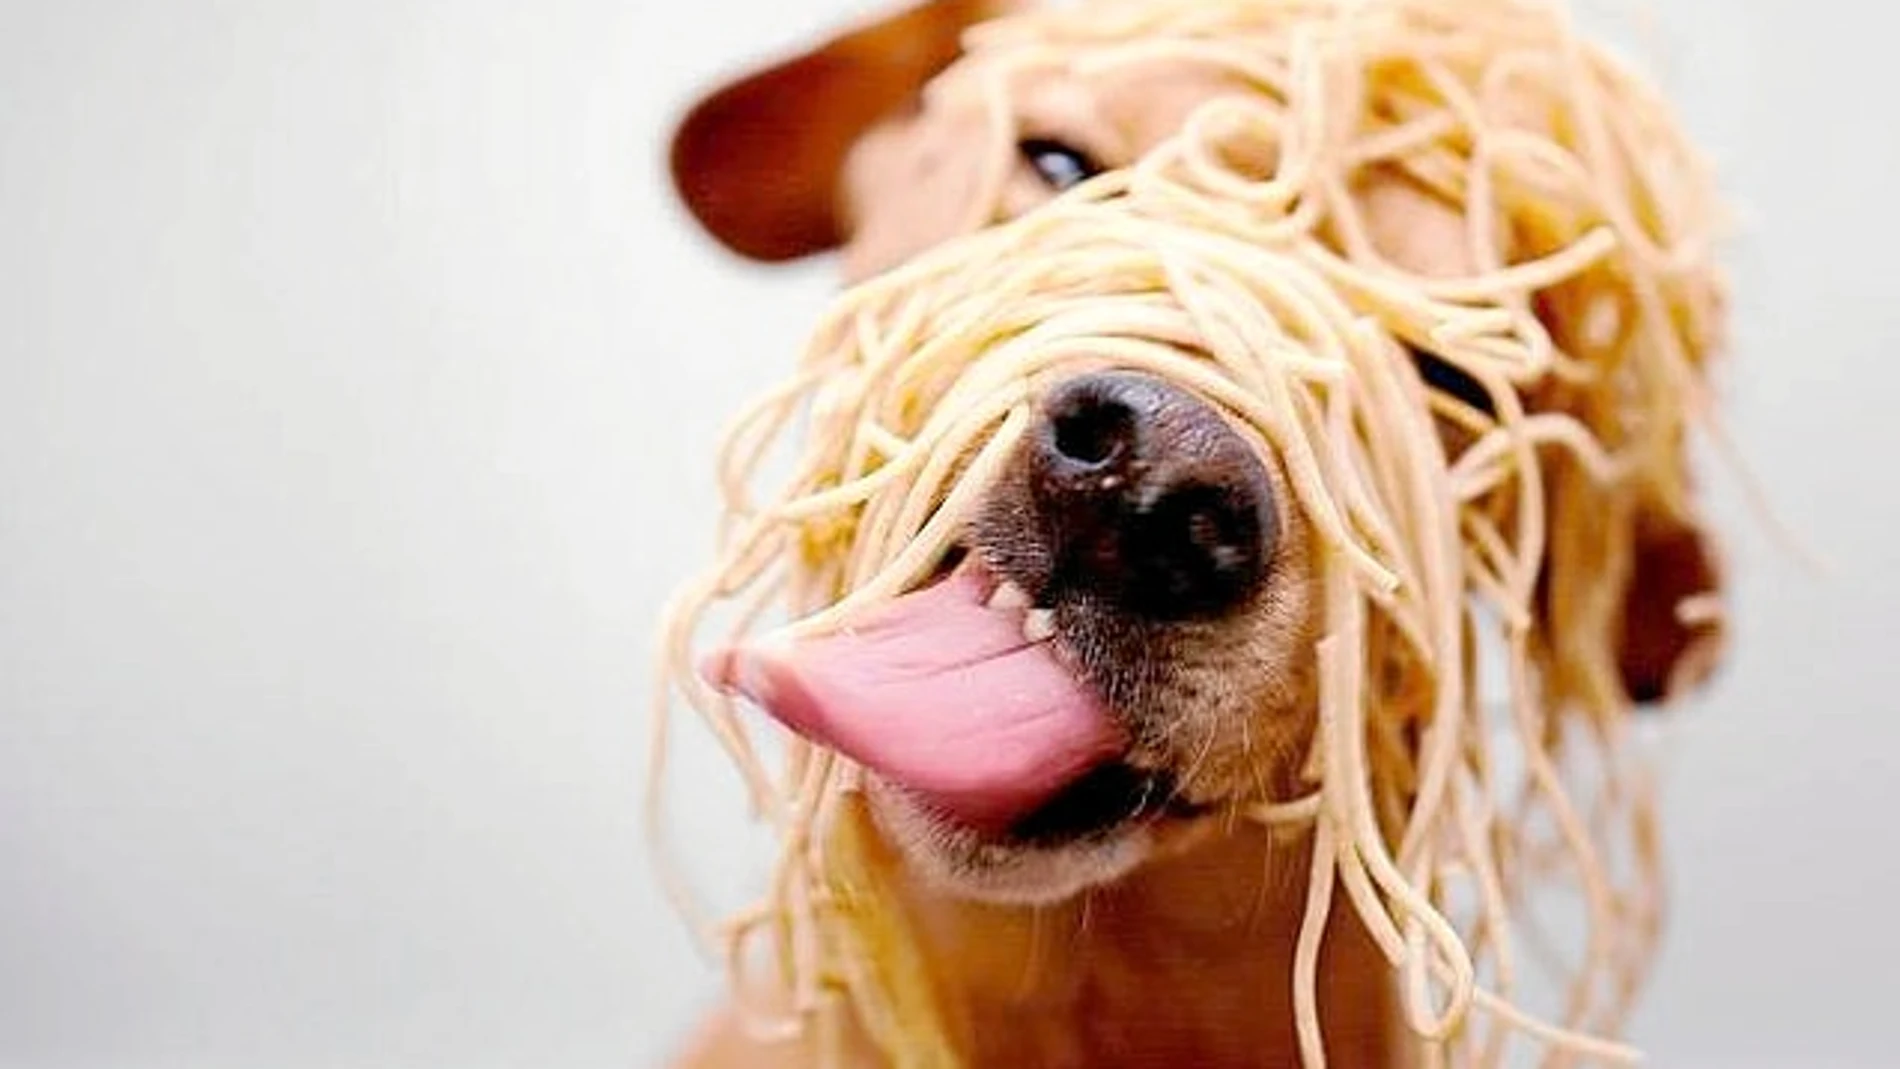 Alimentar a un perro cuesta unos 30 euros al mes, y hasta 100 si requiere una dieta especial